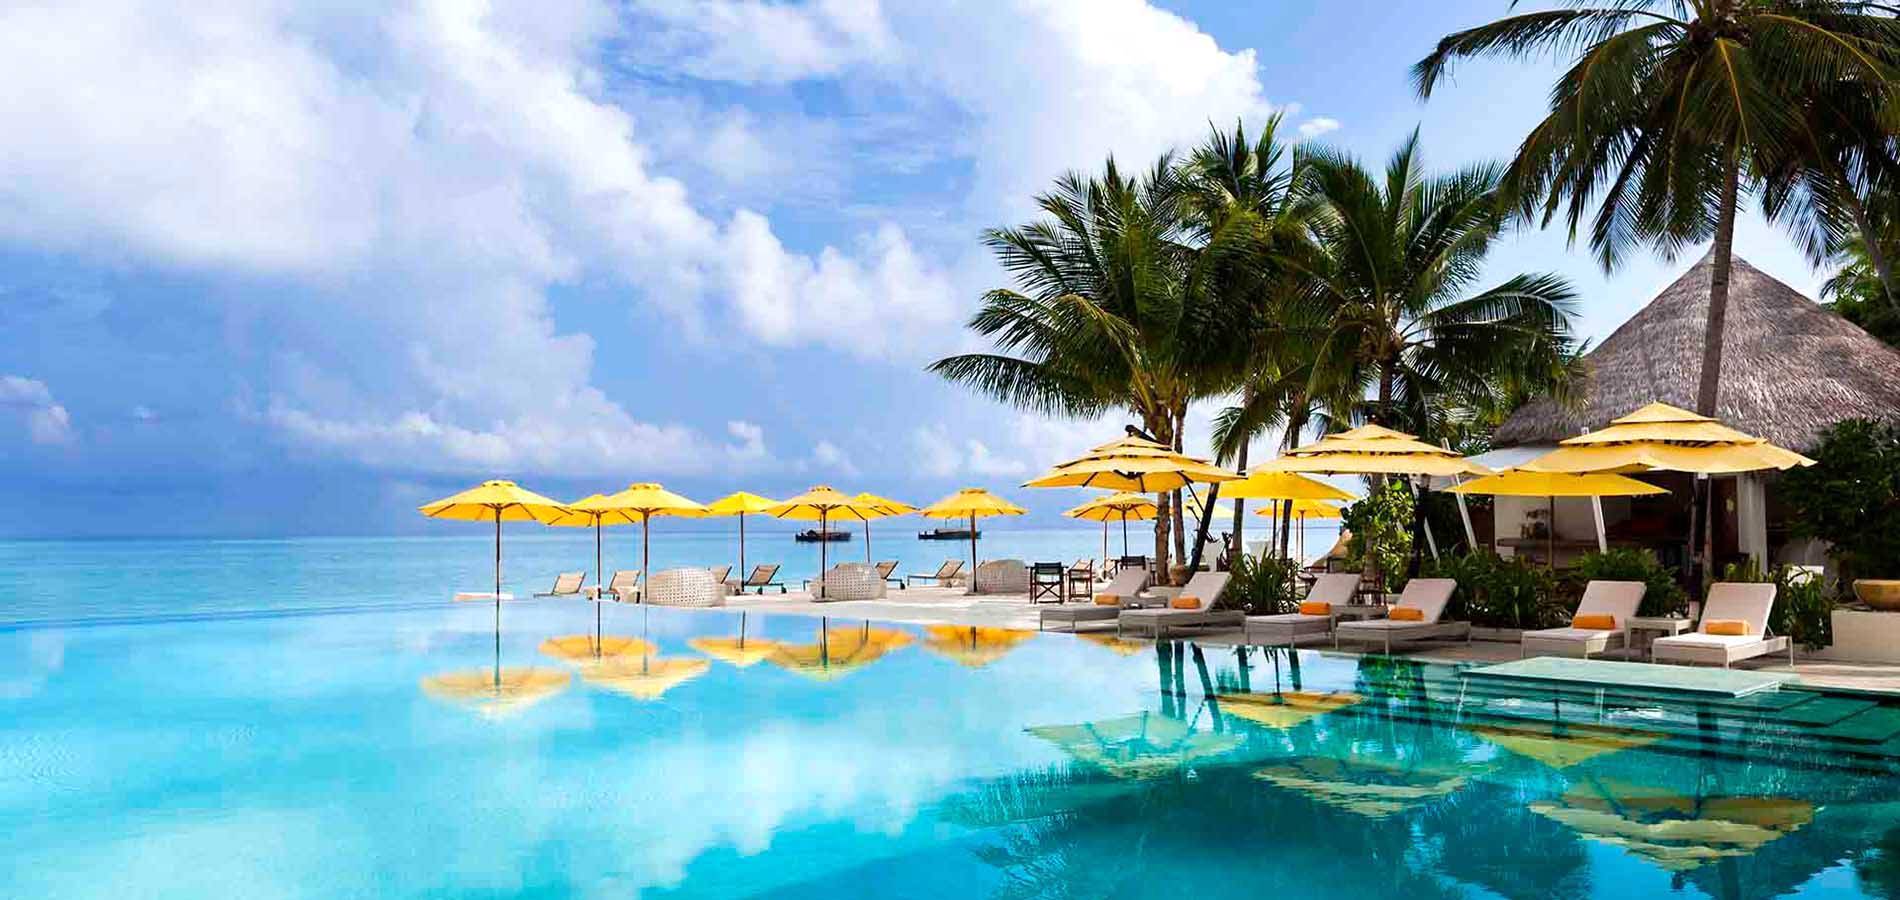 尼亚玛 Niyama Maldives ,马尔代夫风景图片集:沙滩beach与海水water太美，泳池pool与水上活动watersport好玩